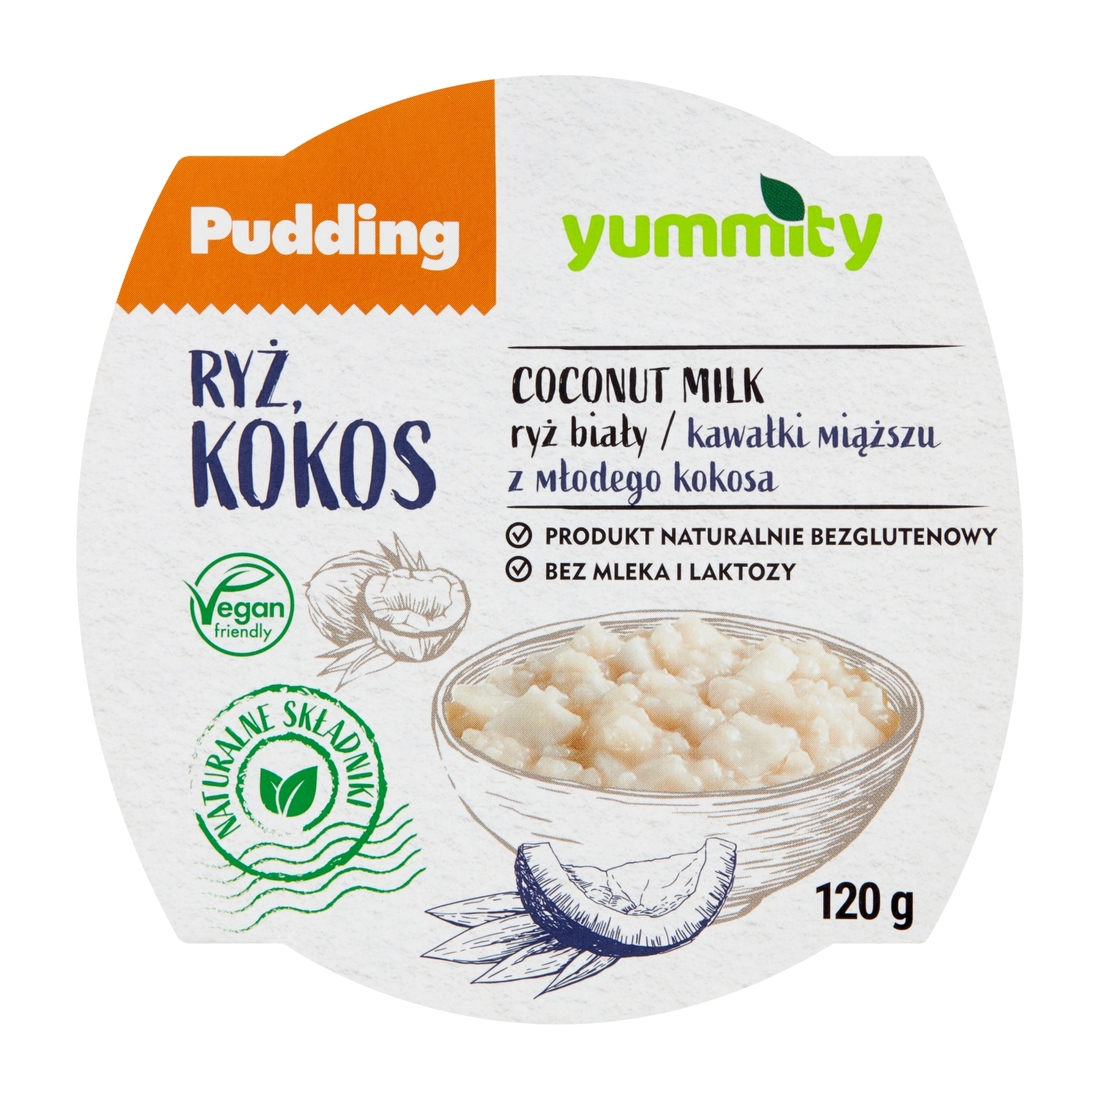 Bezglutenowy pudding ryżowy z kokosem 120 g Yummity